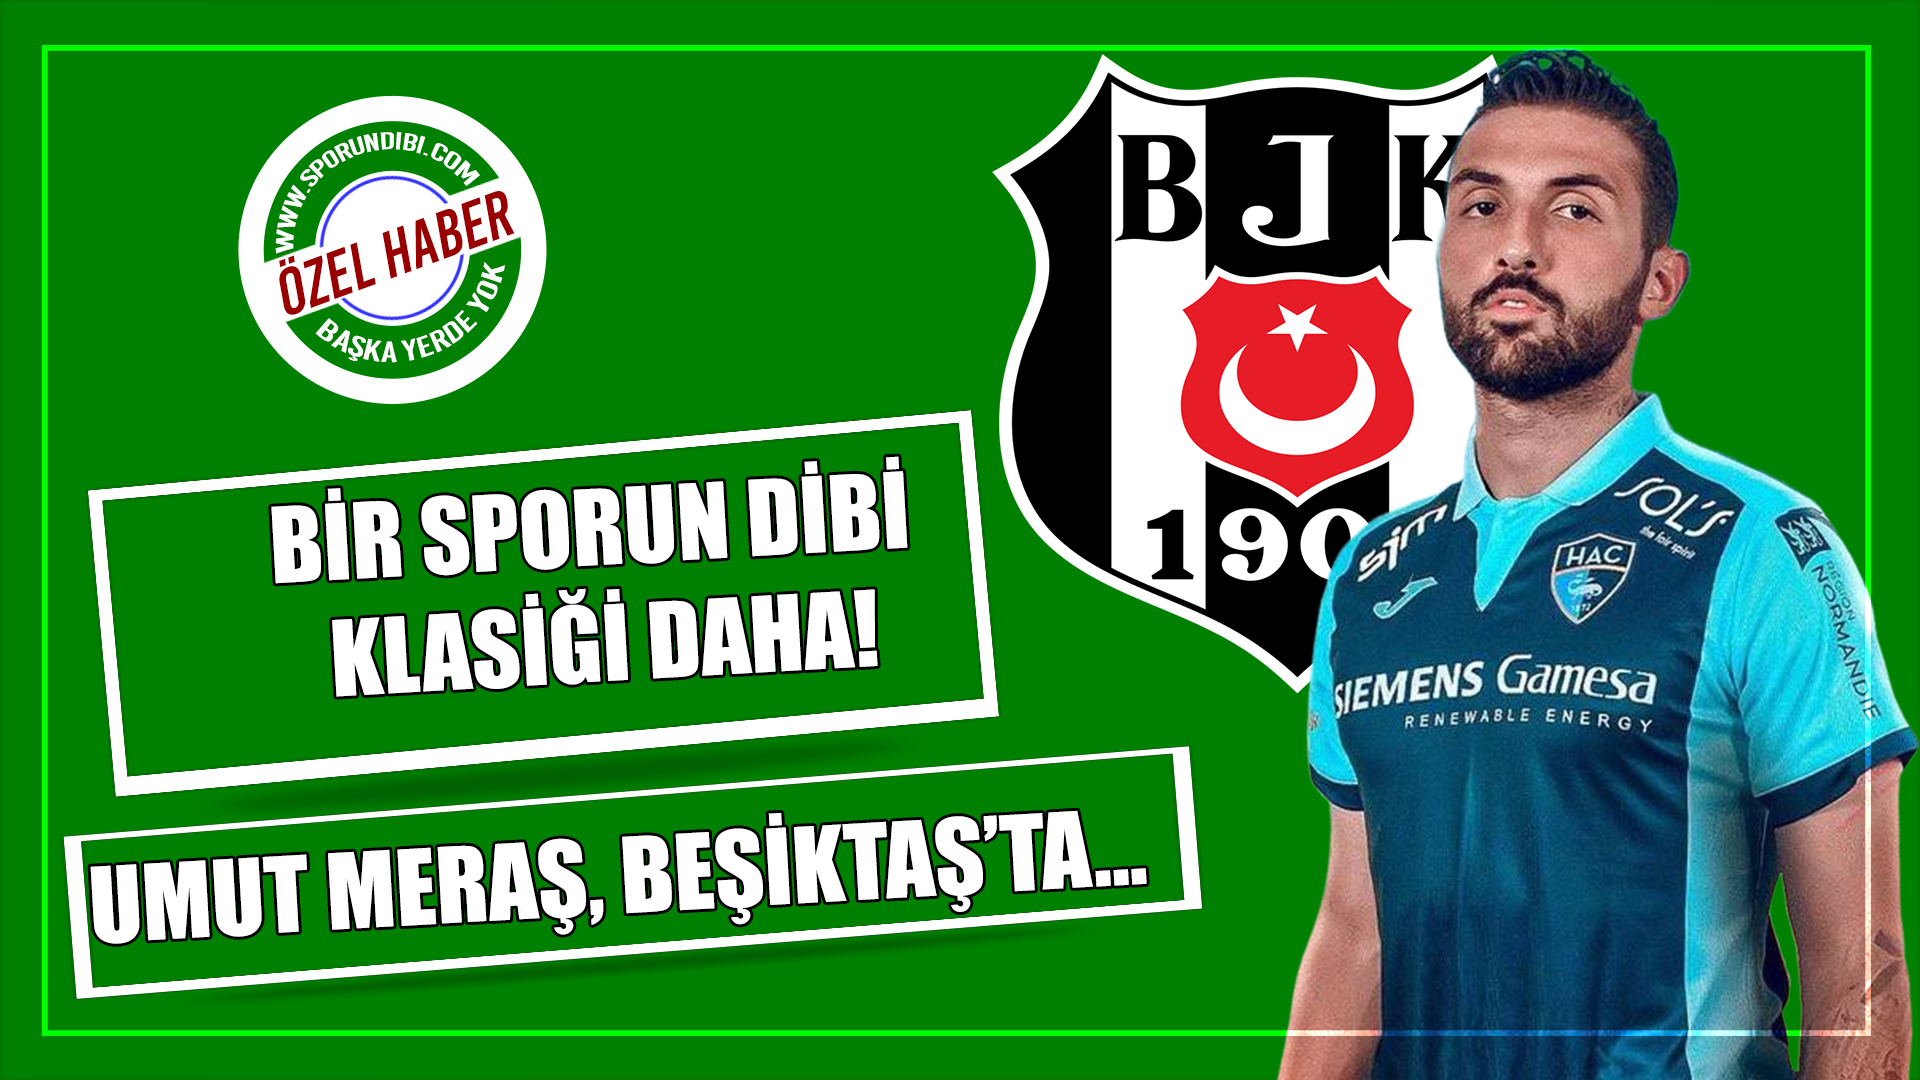 Bir Sporun Dibi klasiği daha! Umut Meraş, Beşiktaş'ta...